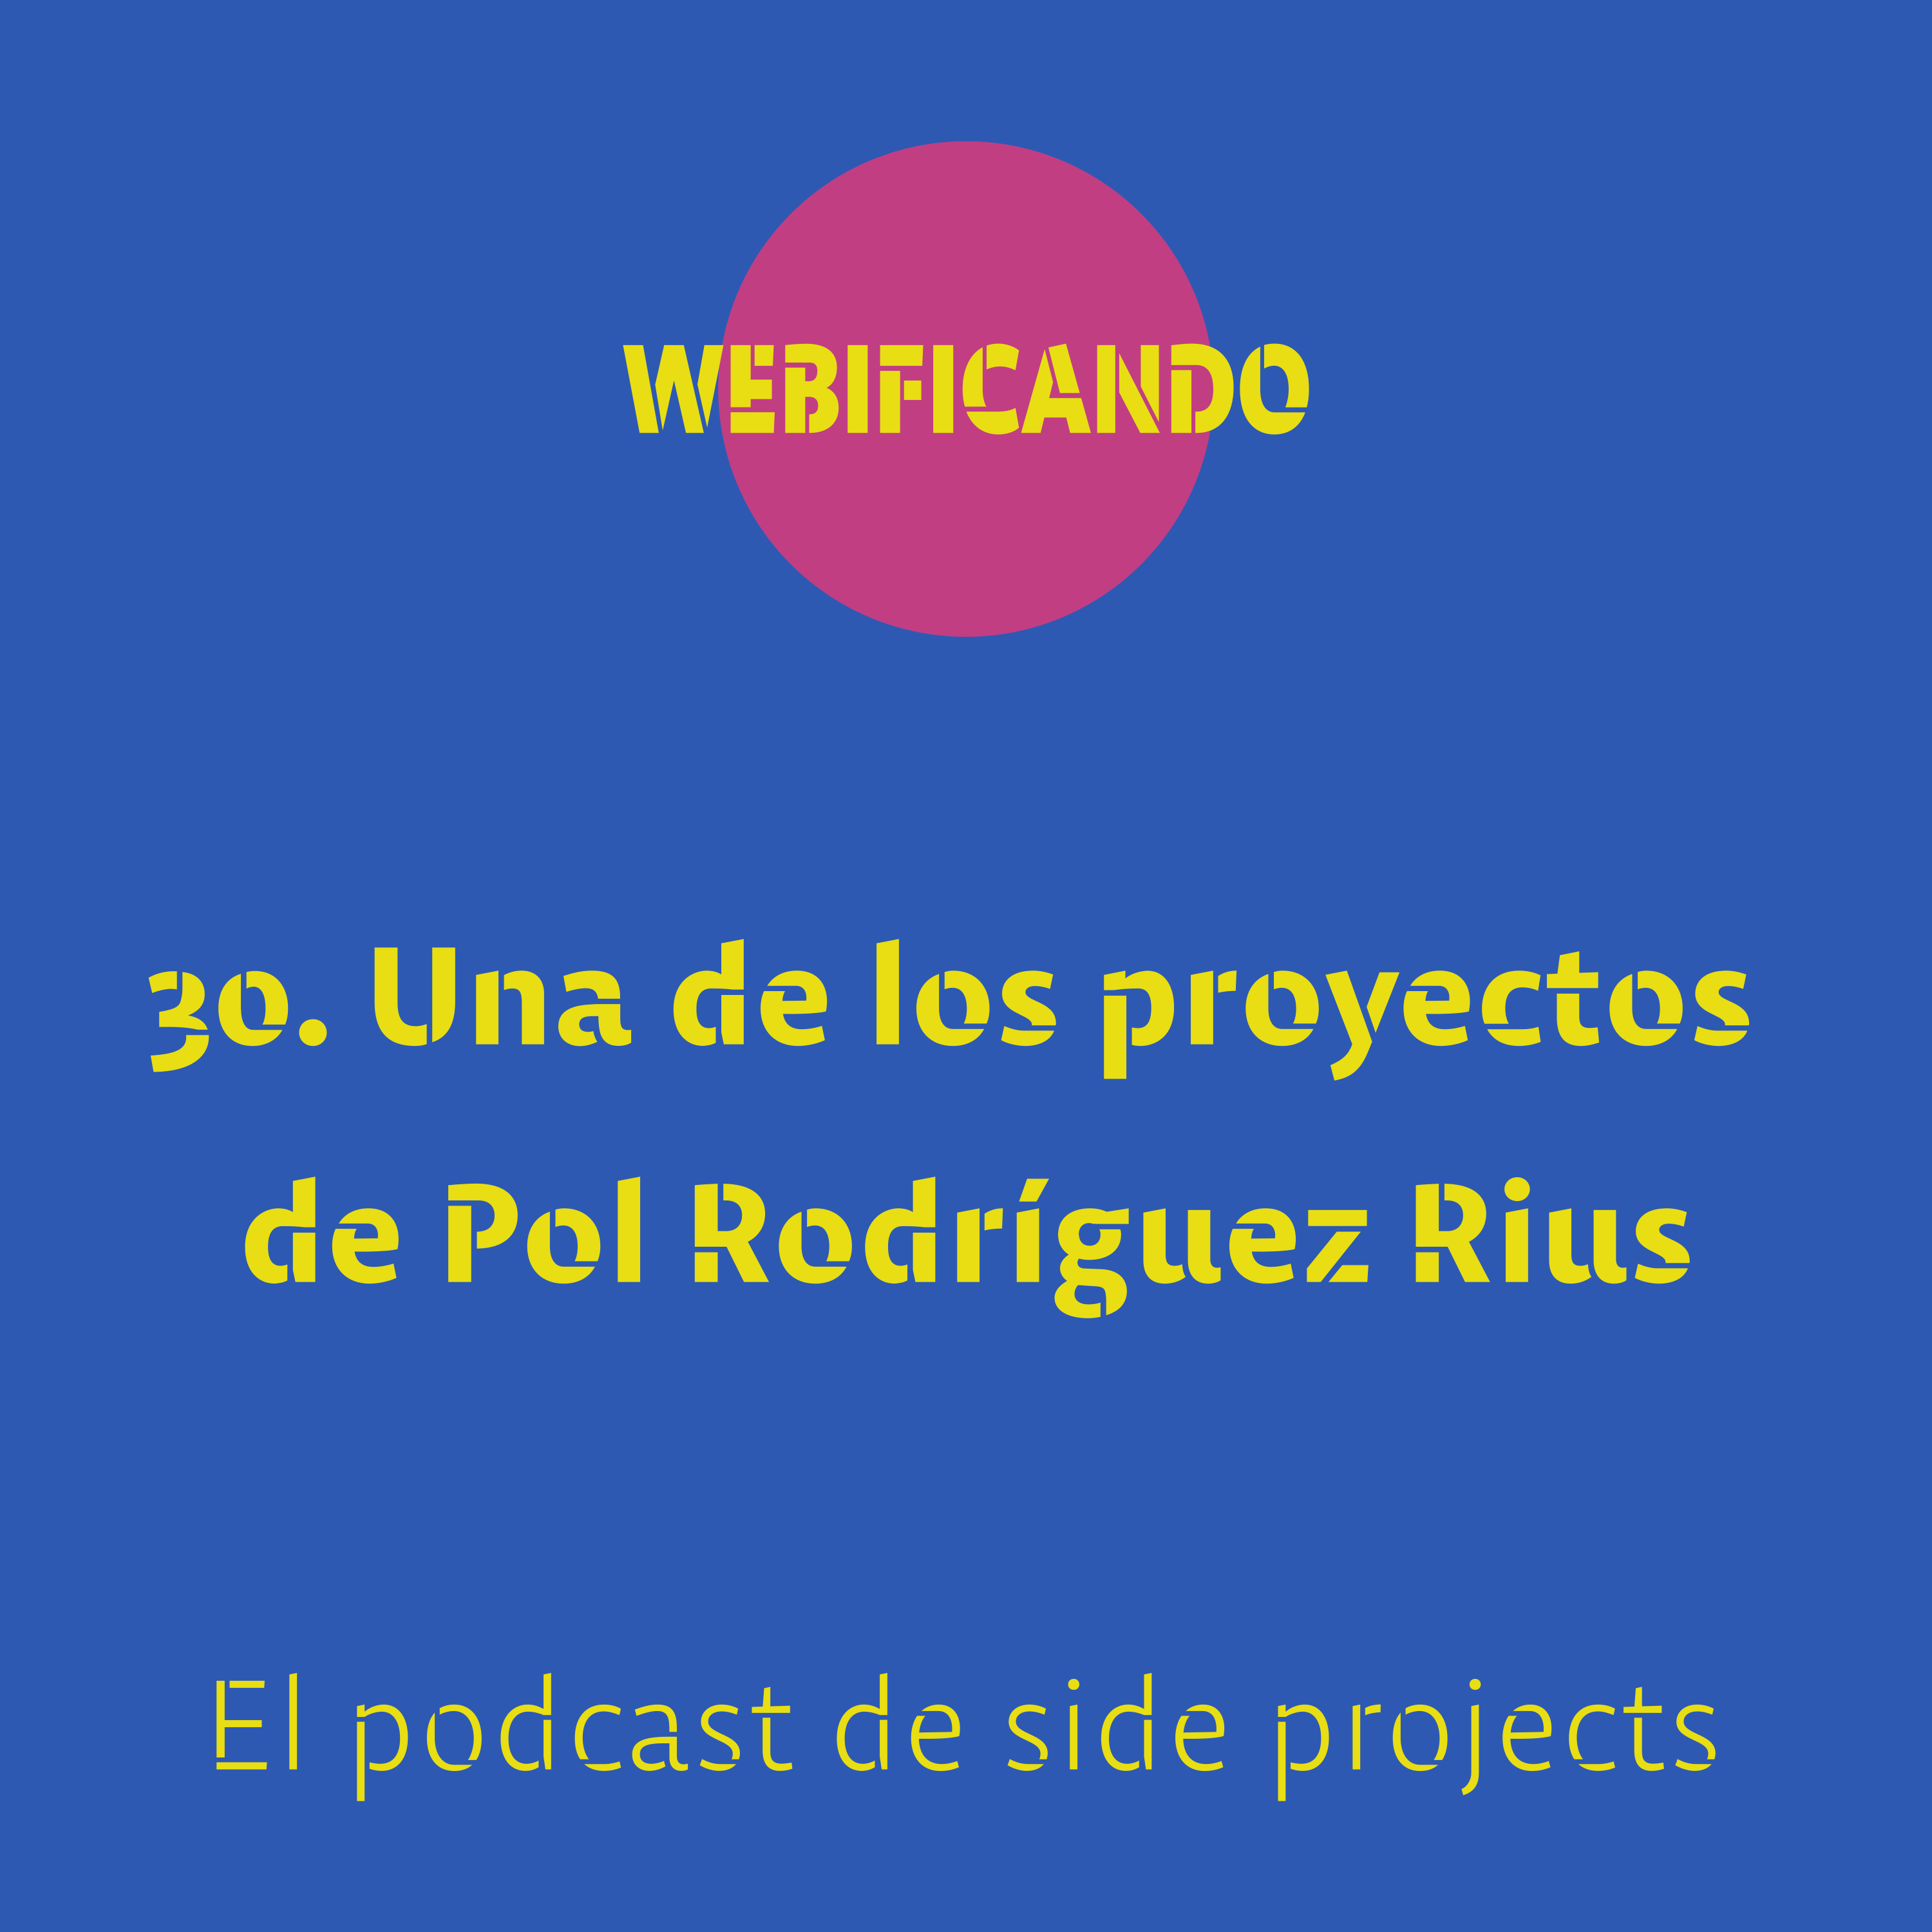 30. Una de los proyectos de Pol Rodríguez Rius